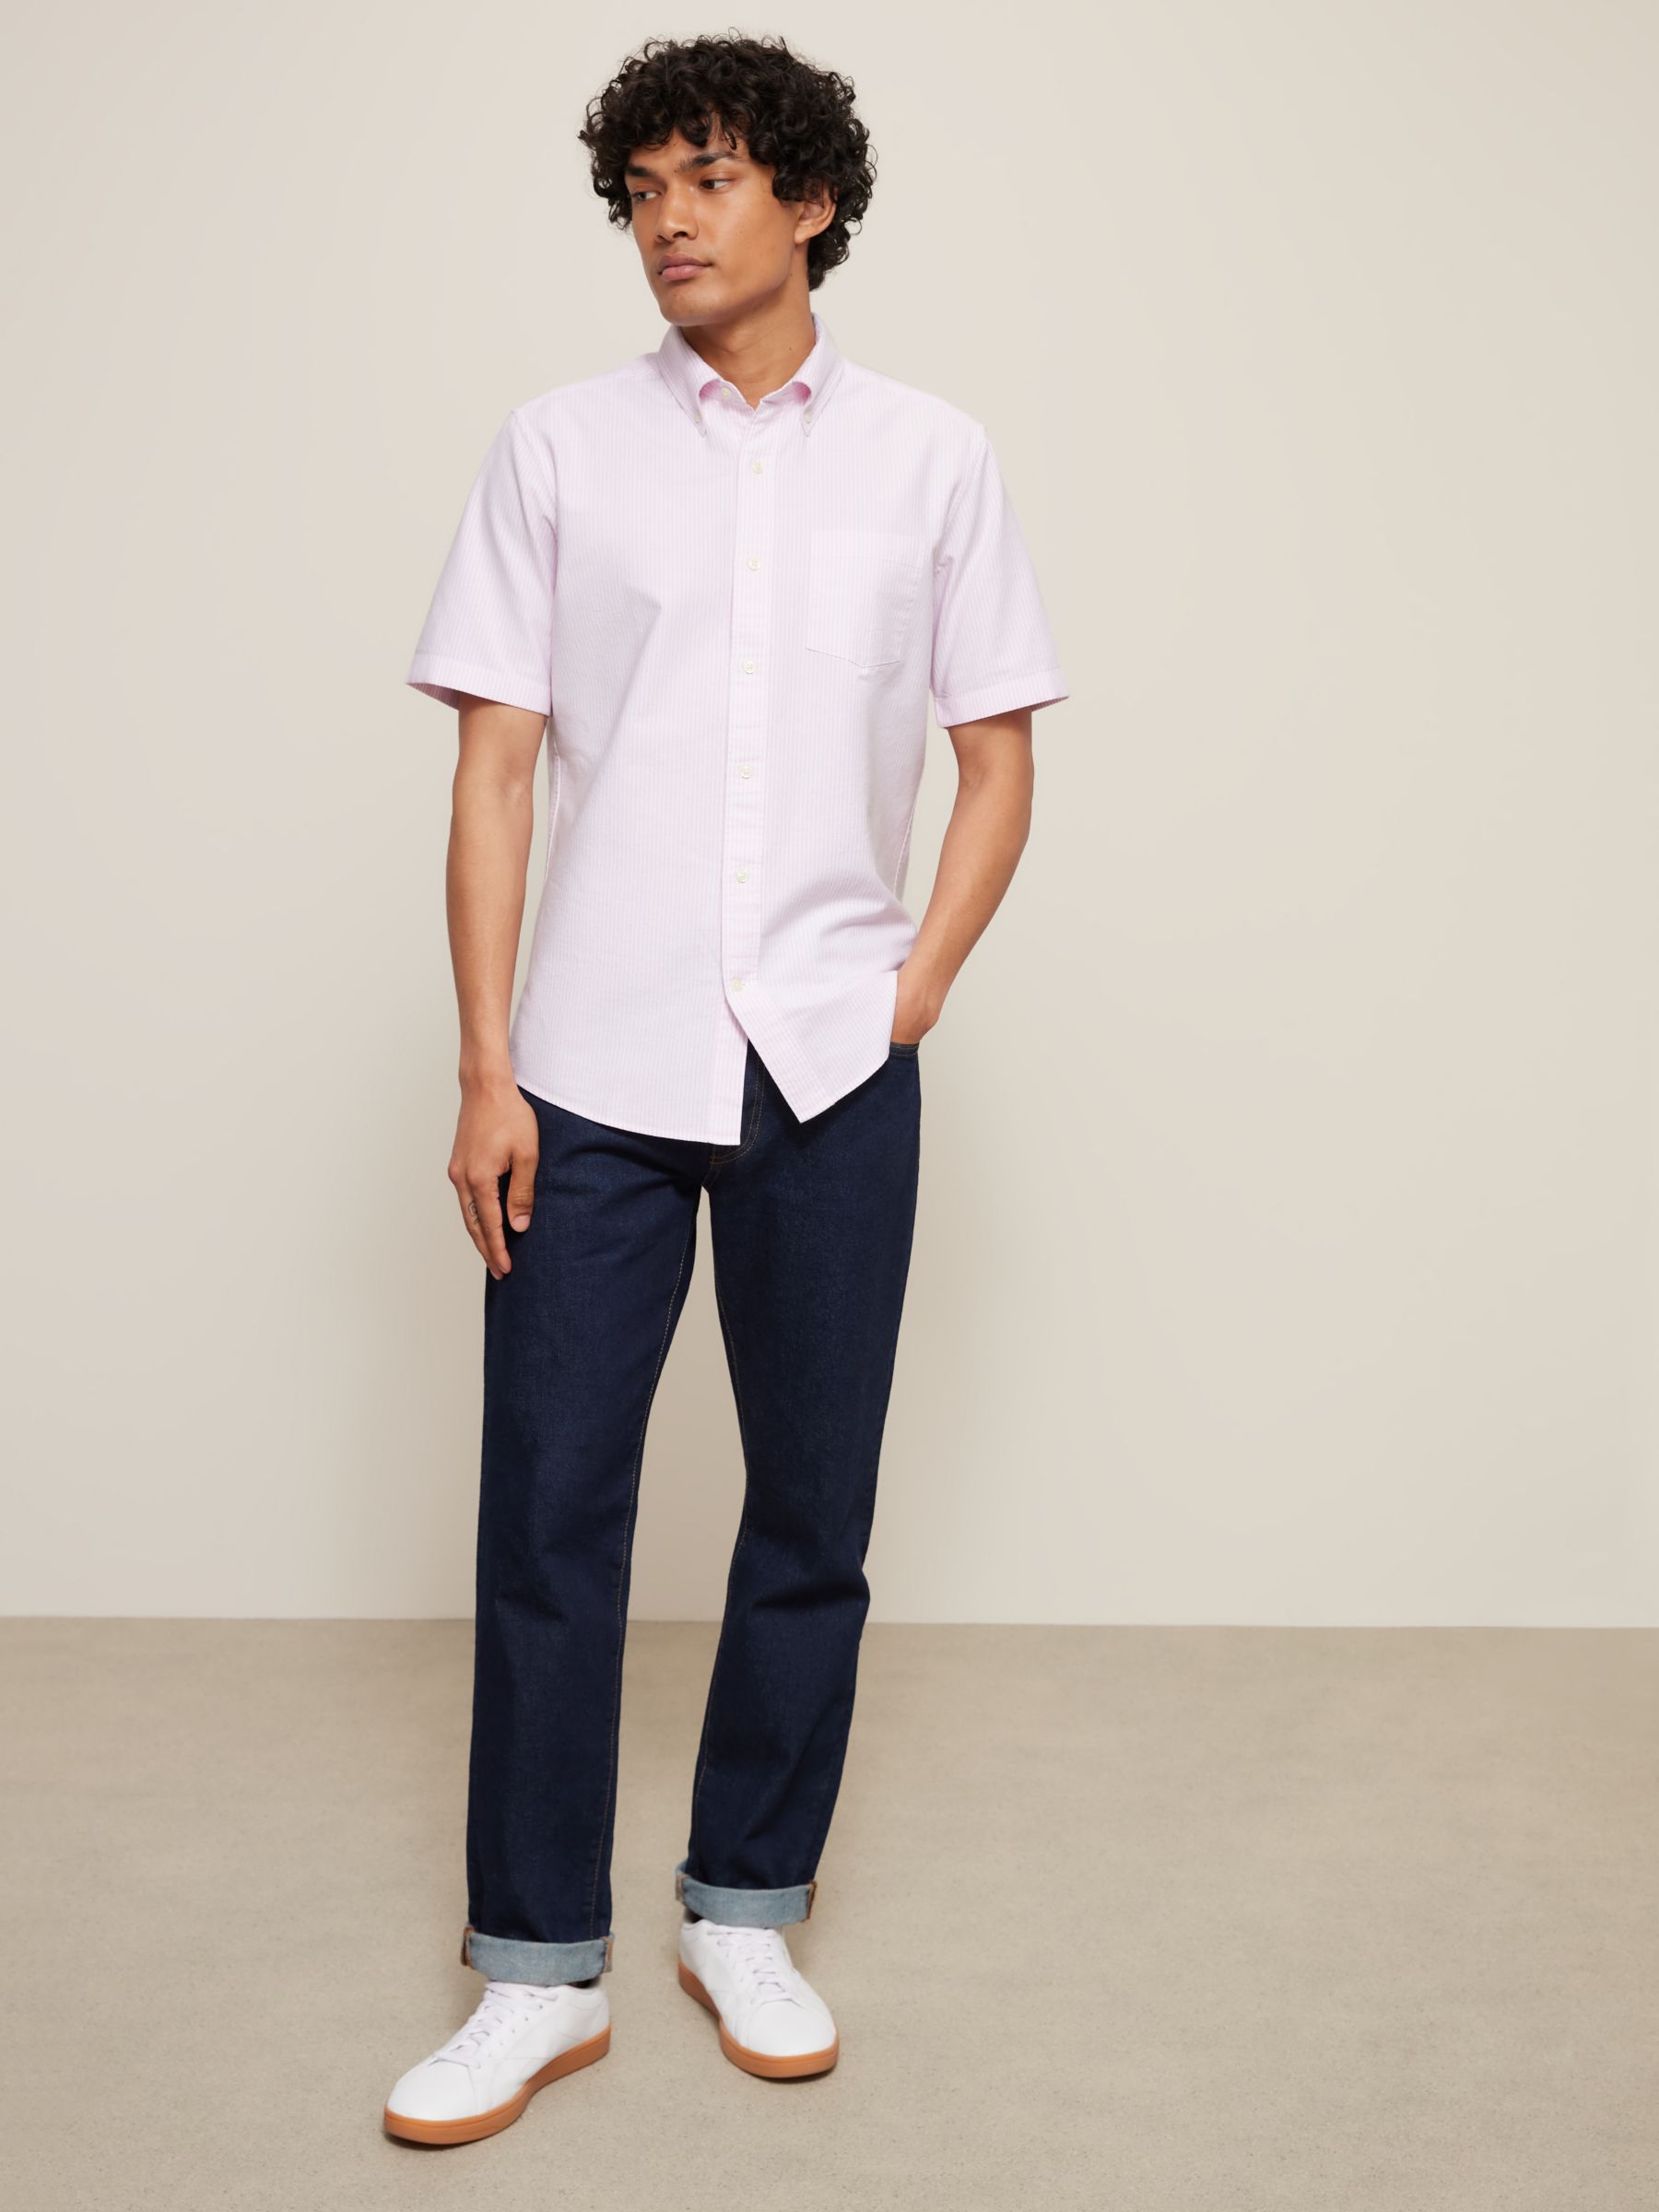 John Lewis Regular Fit Short Sleeve Stripe Shirt, Pink, S